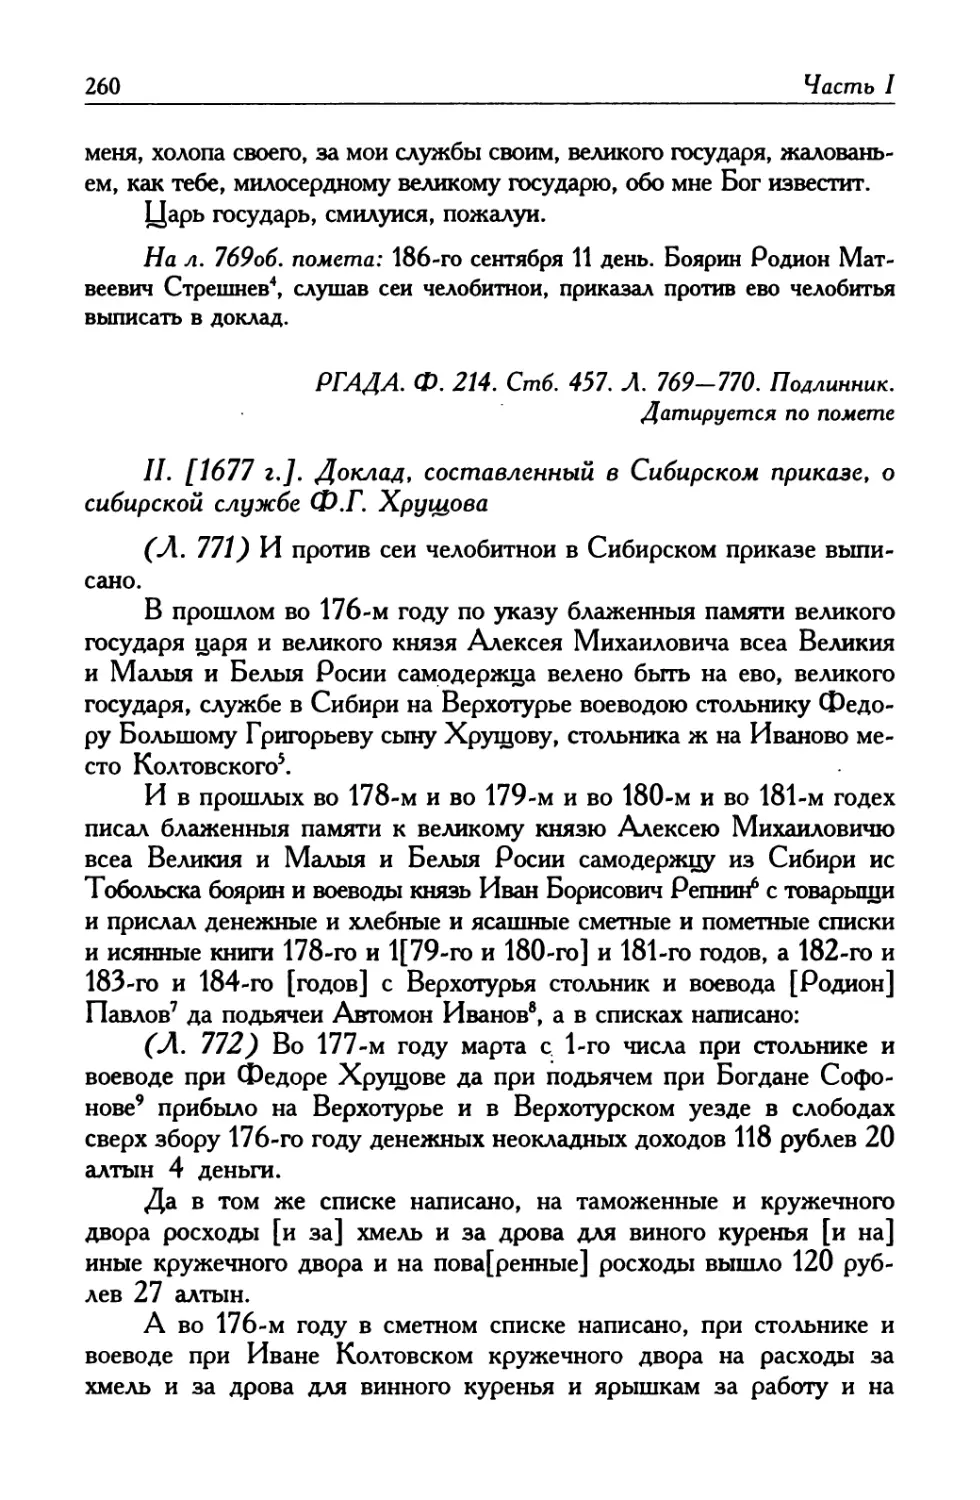 II. [1677 г.]. Доклад, составленный в Сибирском приказе, о сибирской службе Ф. Г. Хрущова